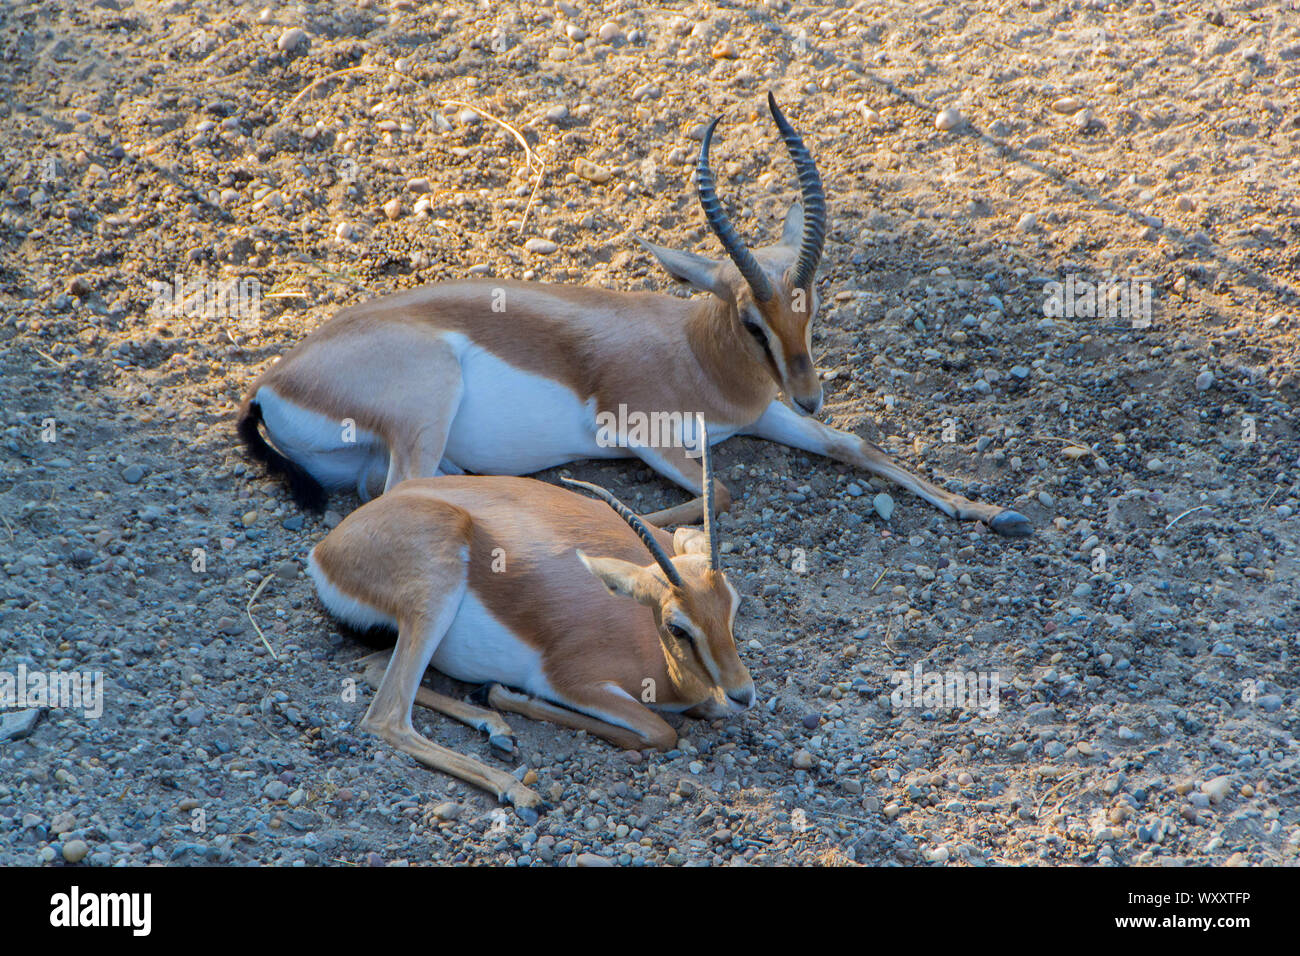 Zwei dorcas gazelle Rest in den Schatten. - Bild Stockfoto